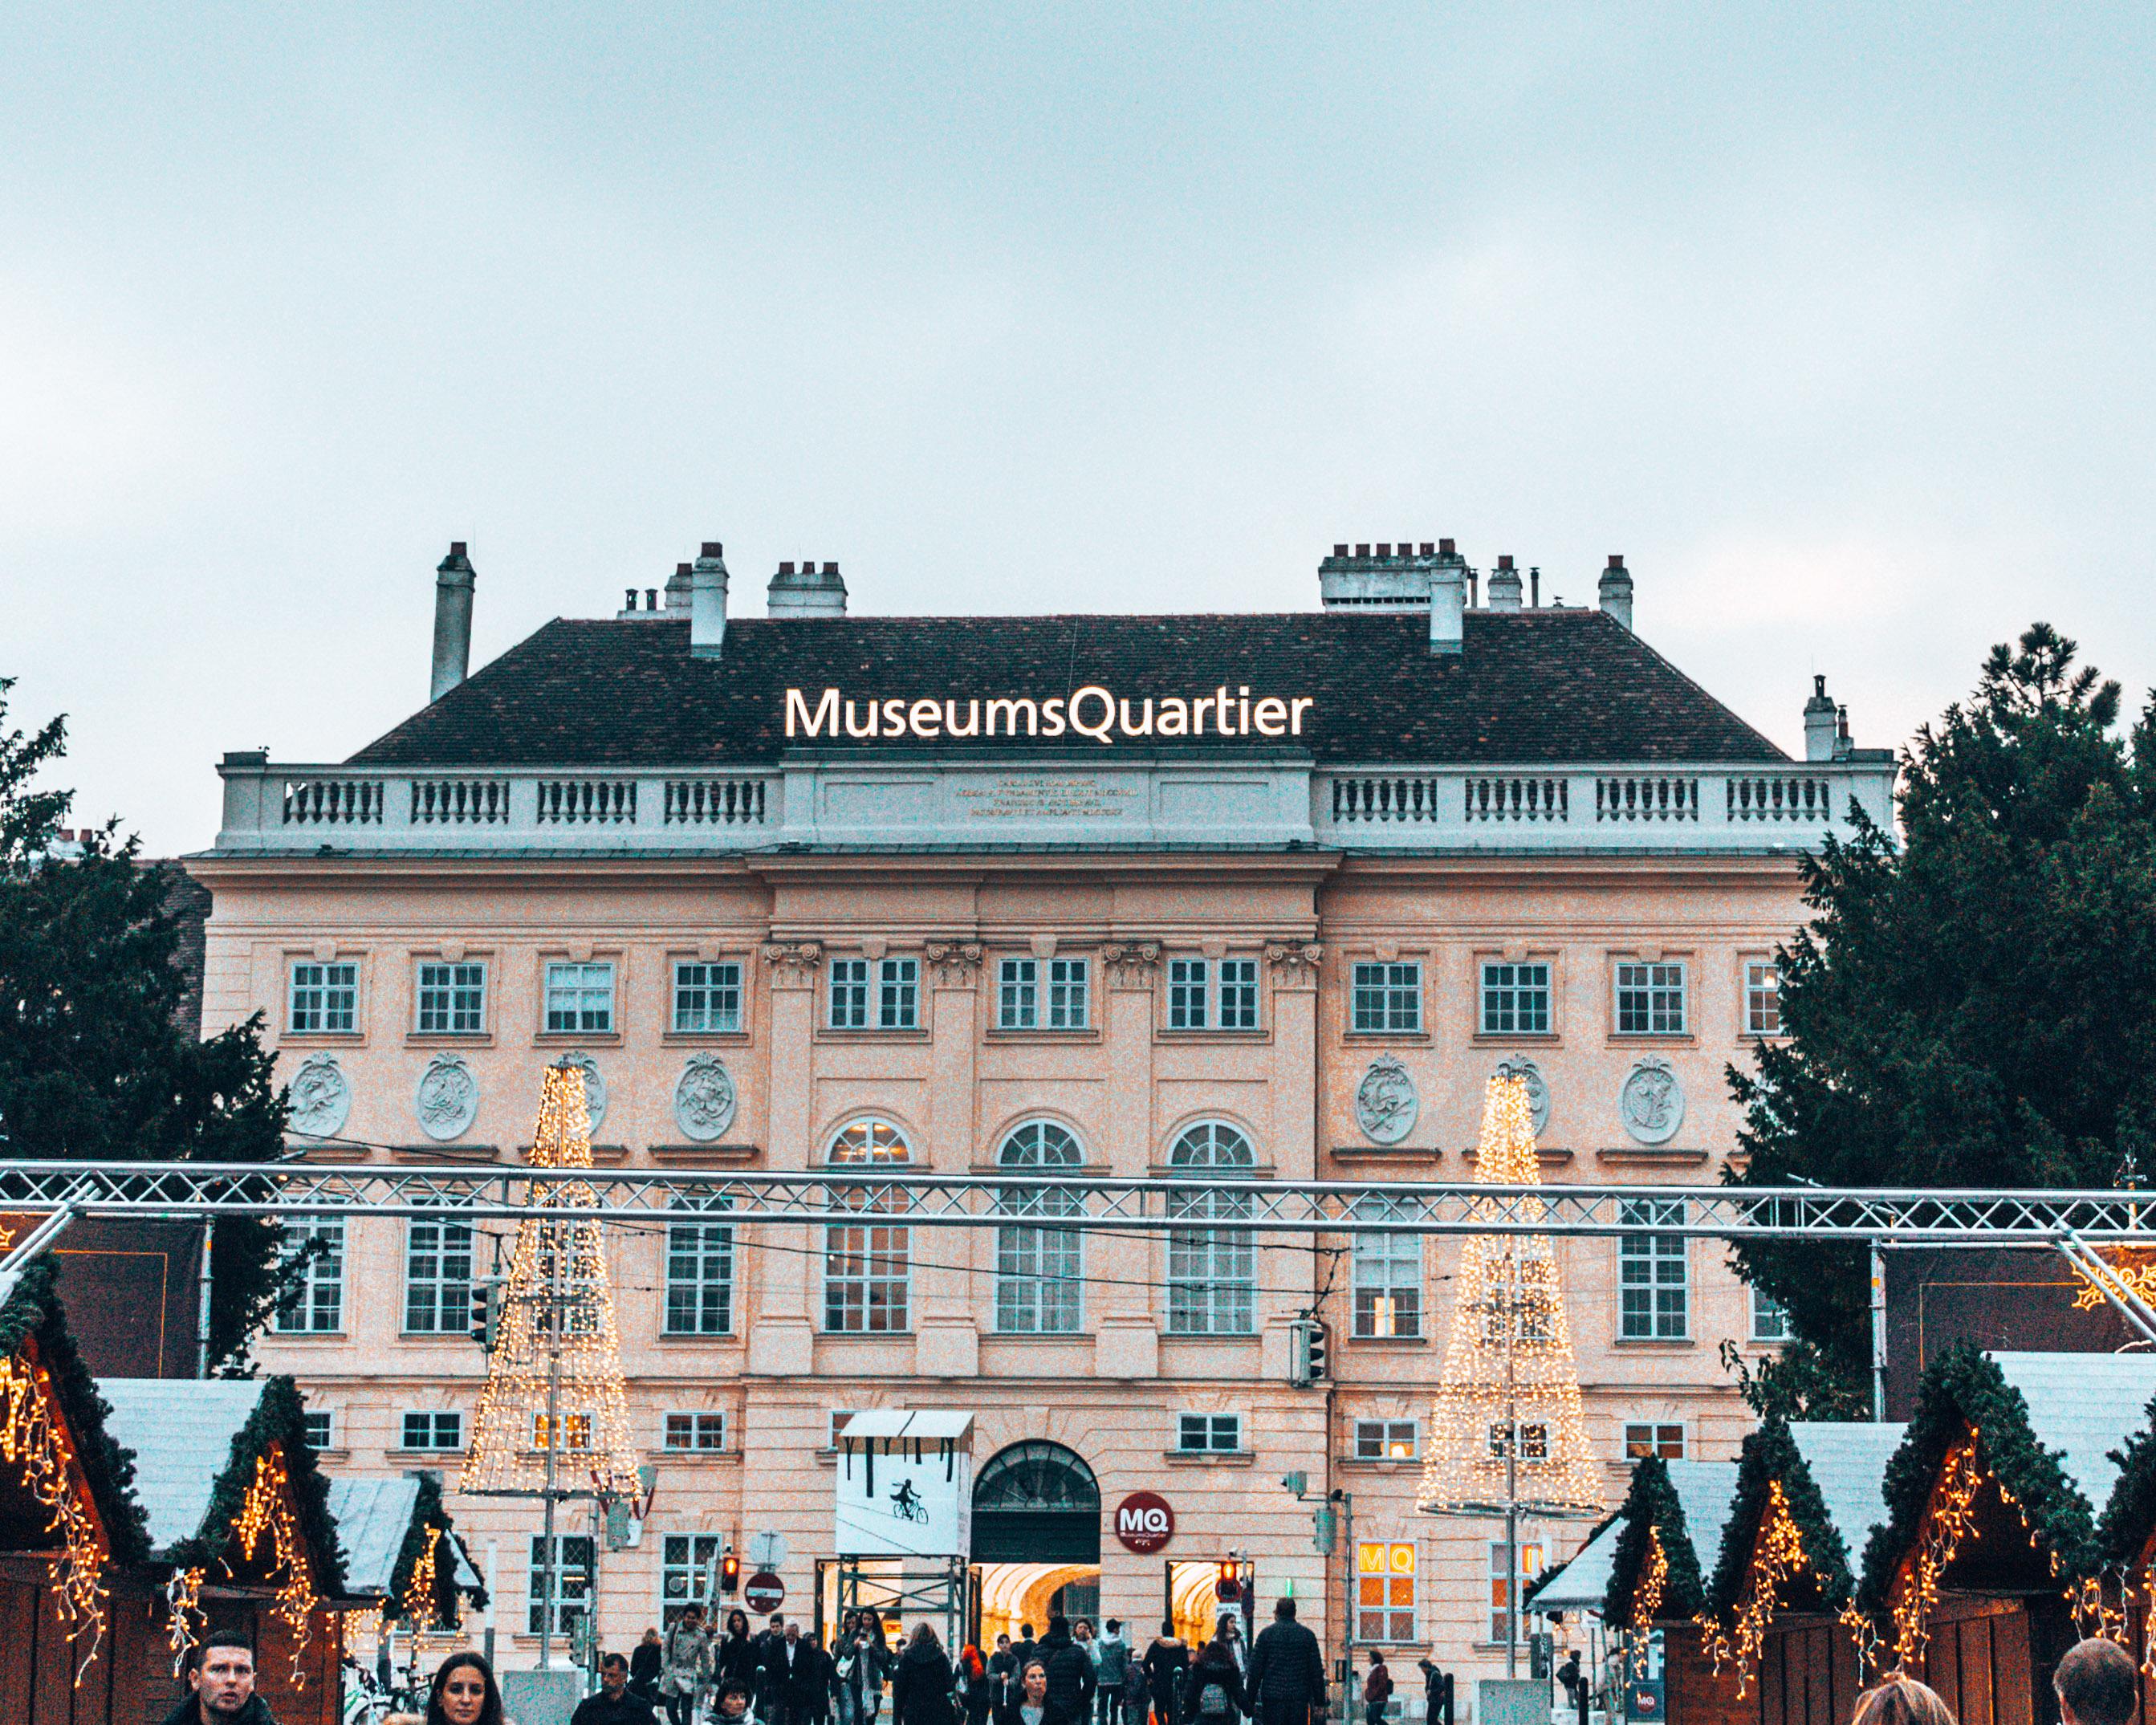 Museum quarter 2 days in Vienna Austria